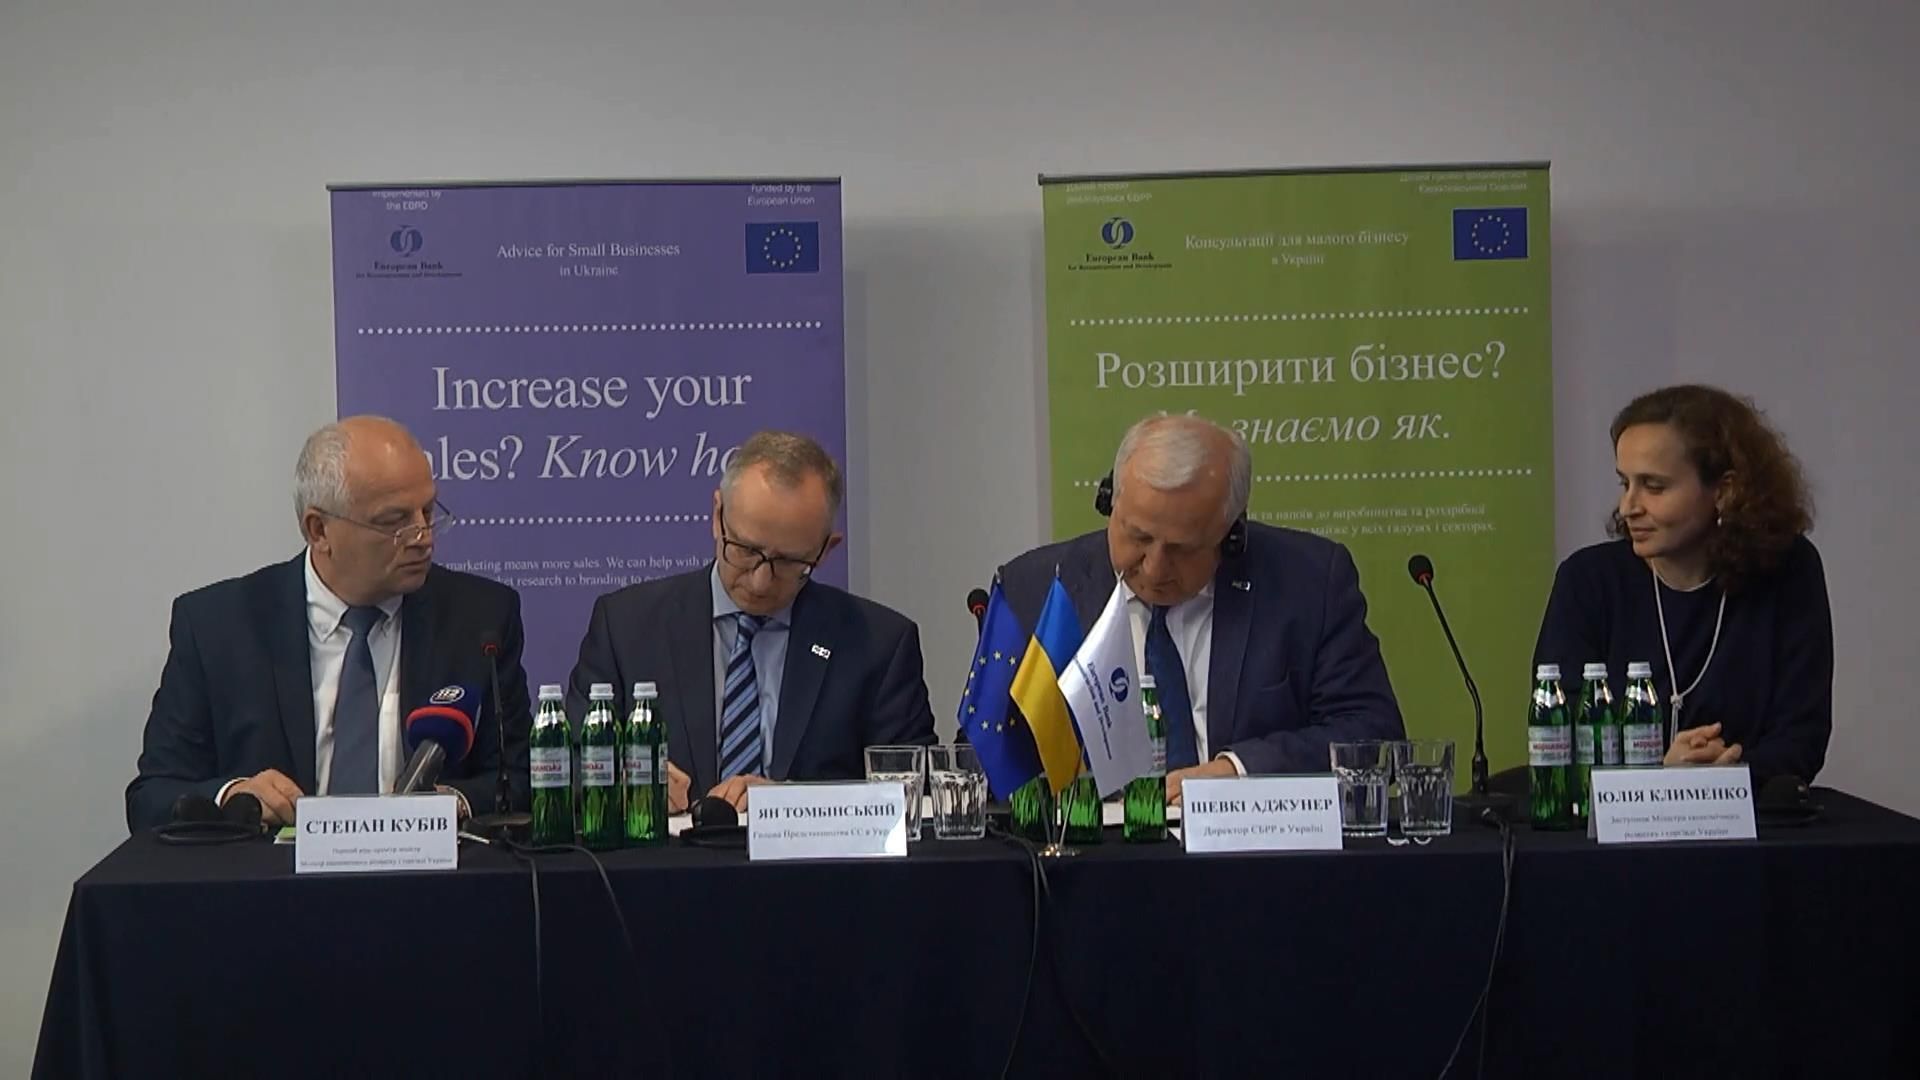 ЄС виділить 40 мільйонів євро на навчання для українських підприємців